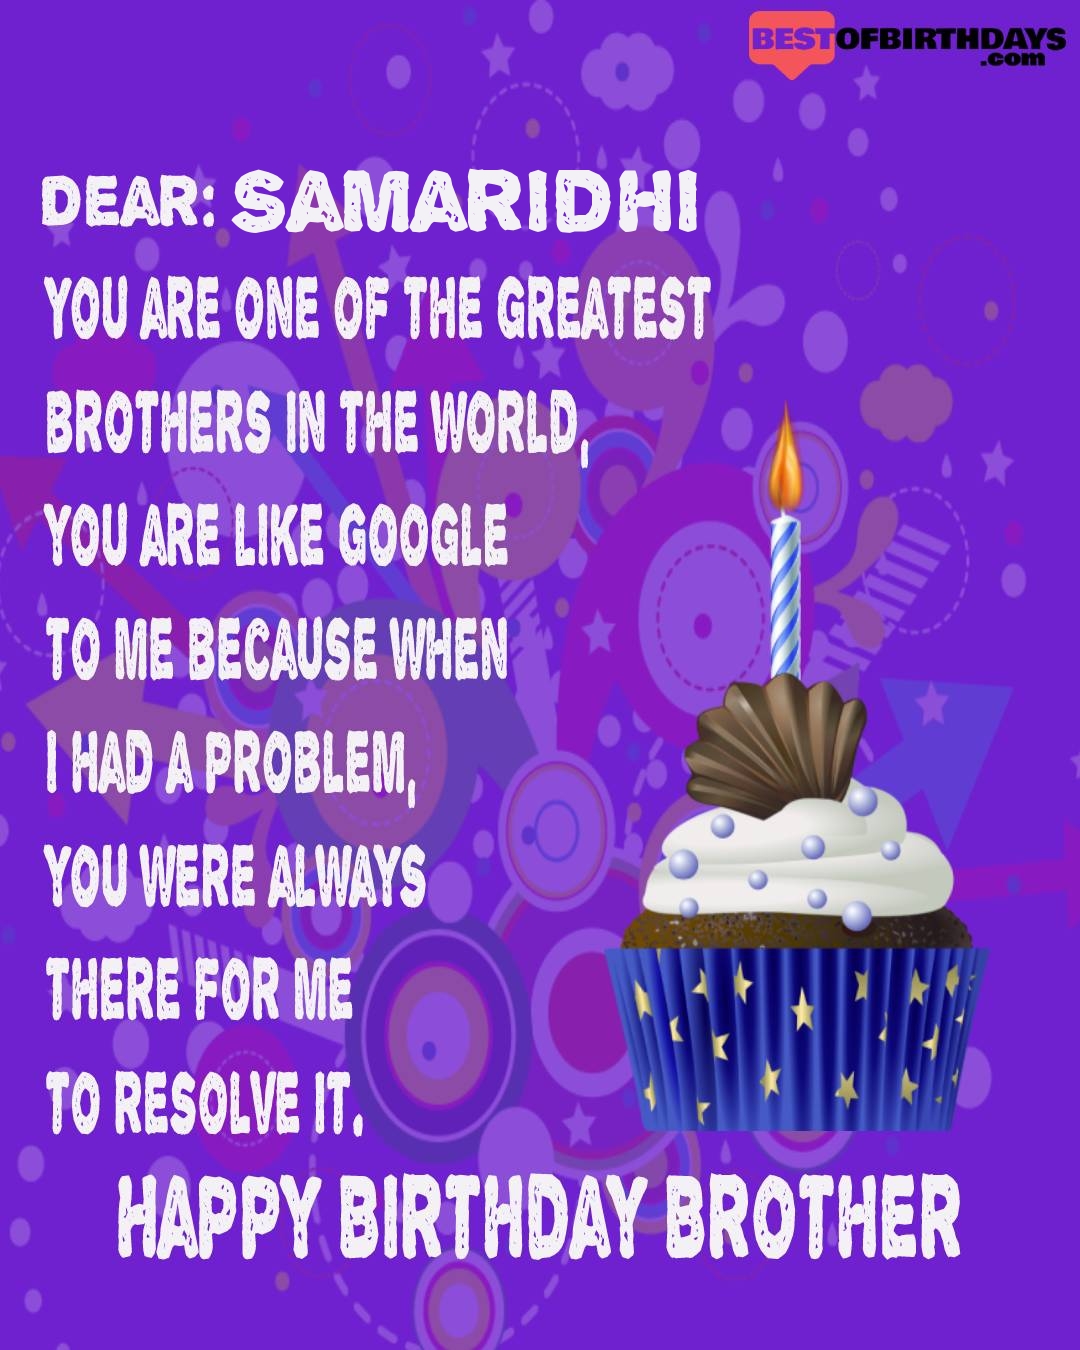 Happy birthday samaridhi bhai brother bro